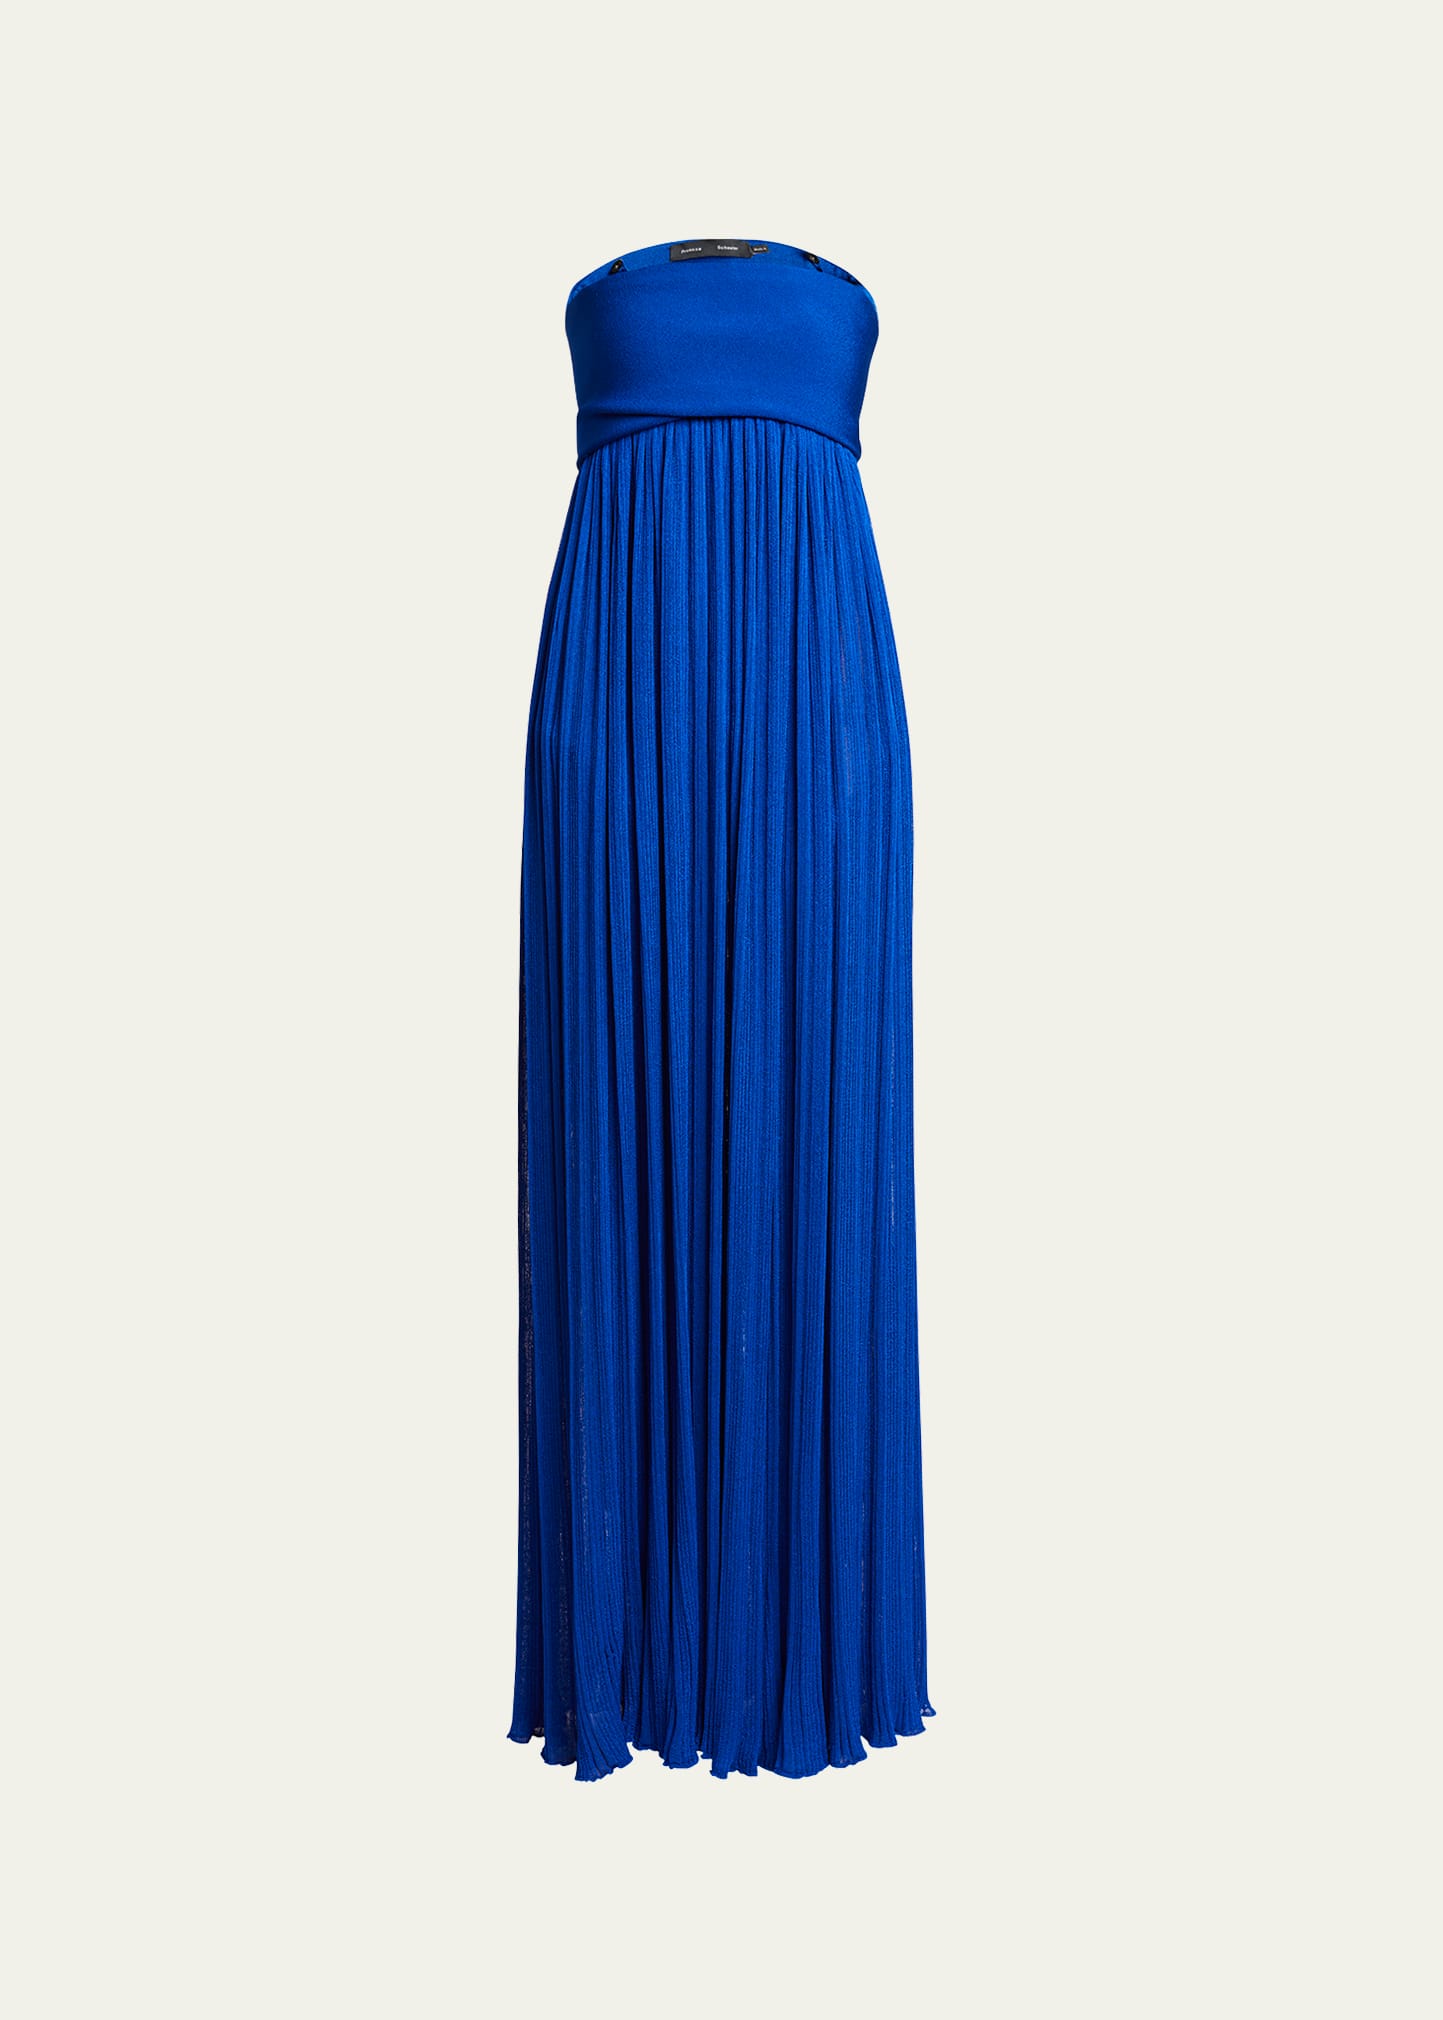 Proenza Schouler Strapless Knit Maxi Dress In Cobalt